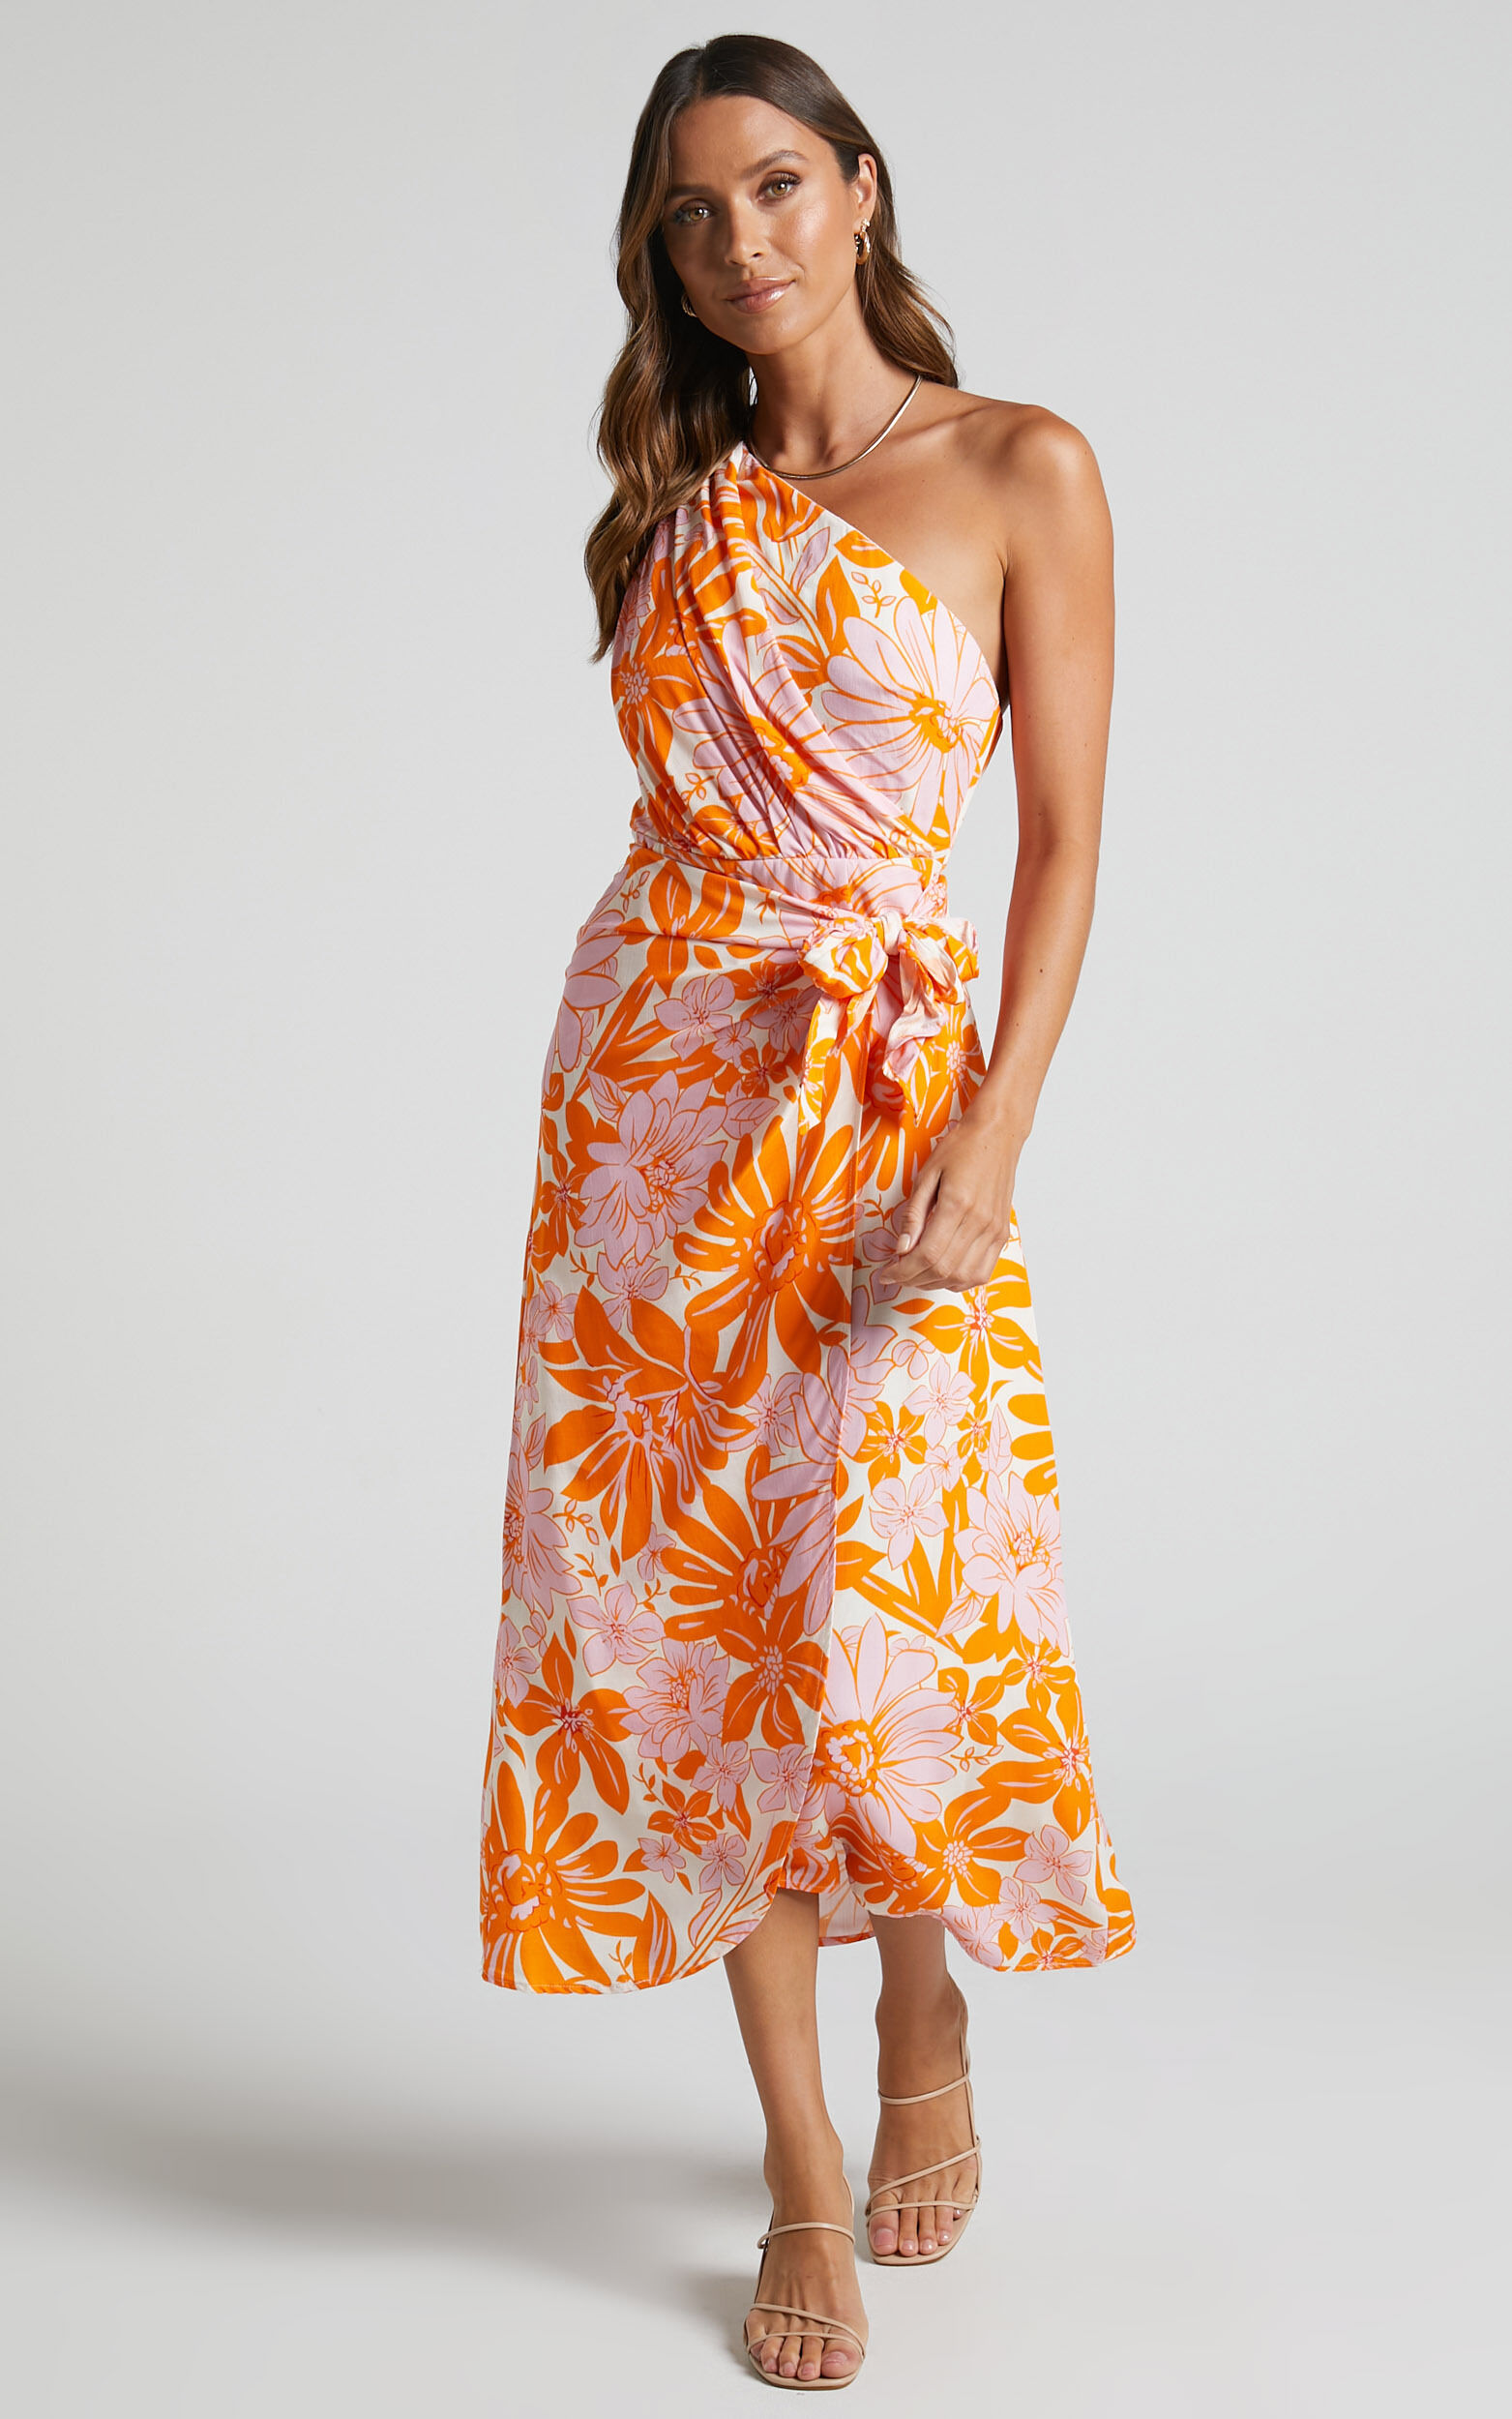 Khalia Midi Dress - Asymmetrical One Shoulder Wrap Dress in Orange Floral - 06, ORG1, super-hi-res image number null